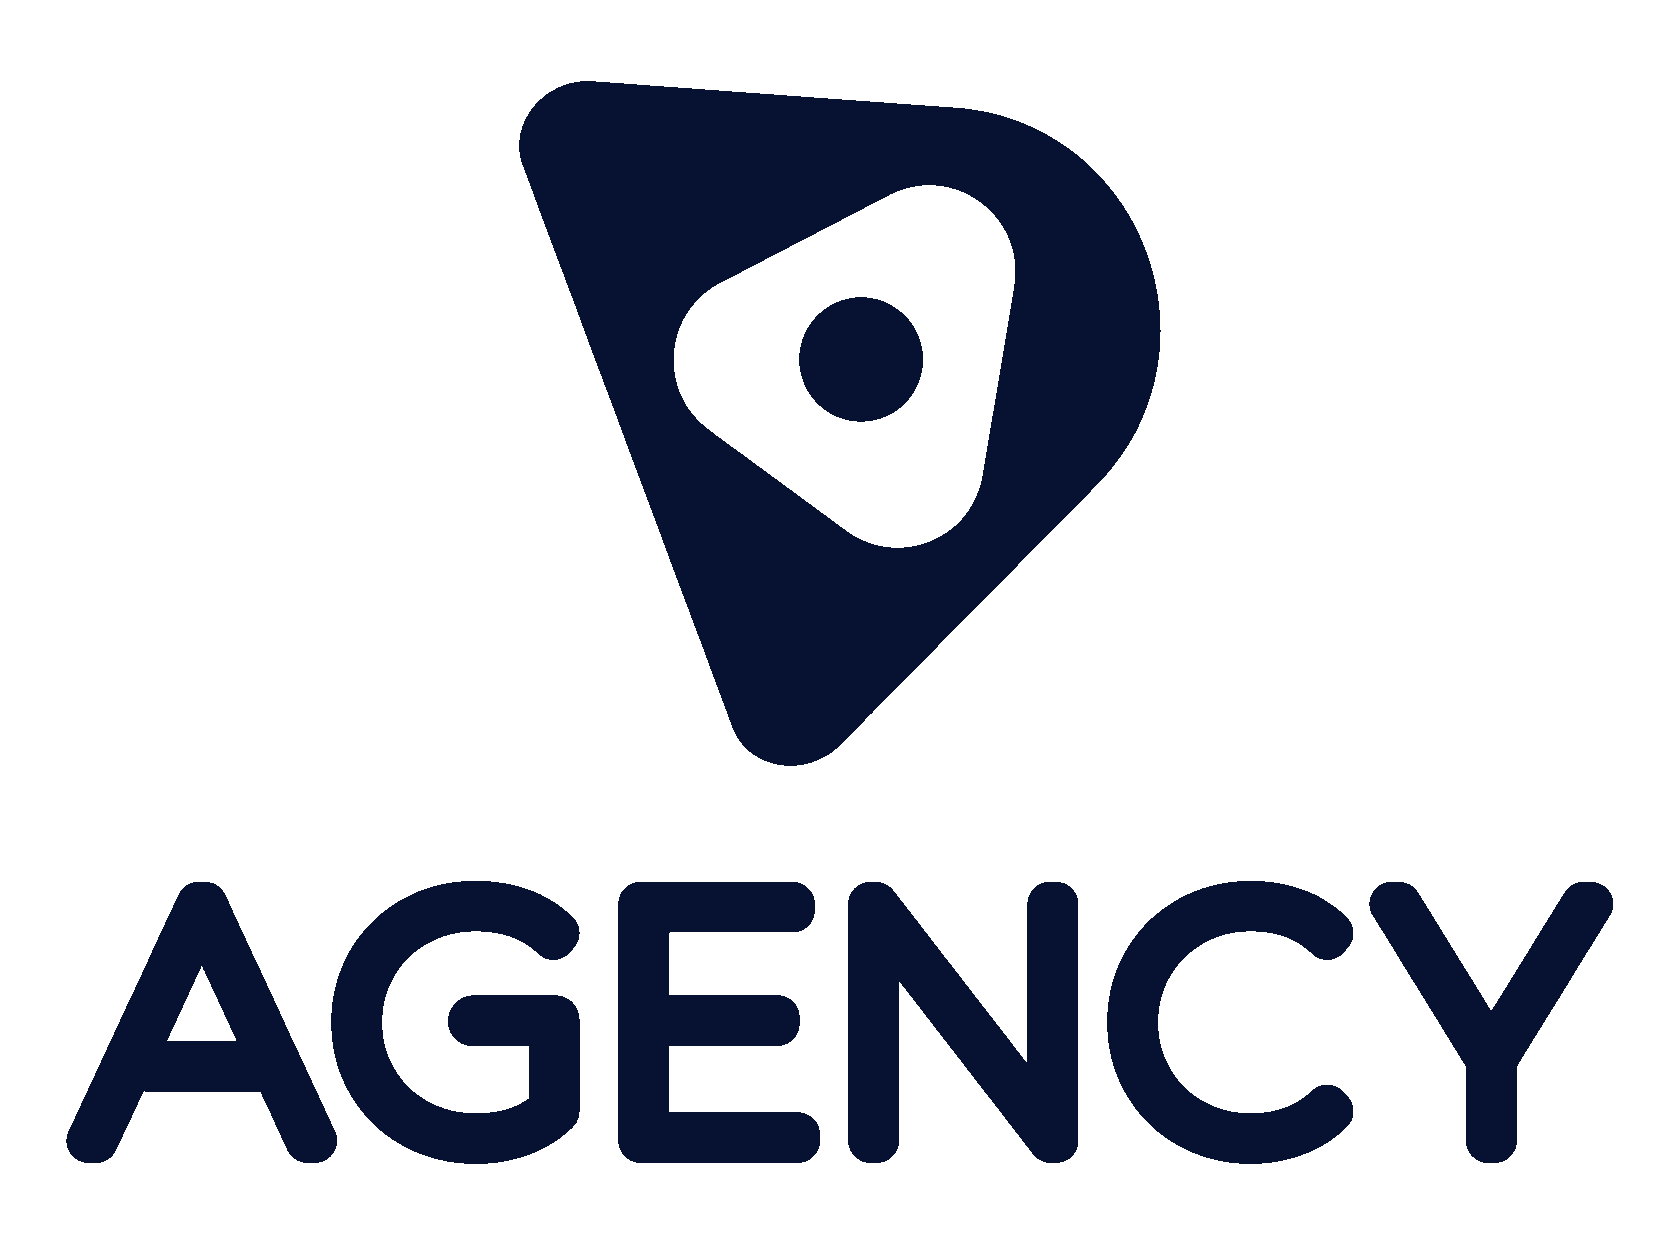 D agency